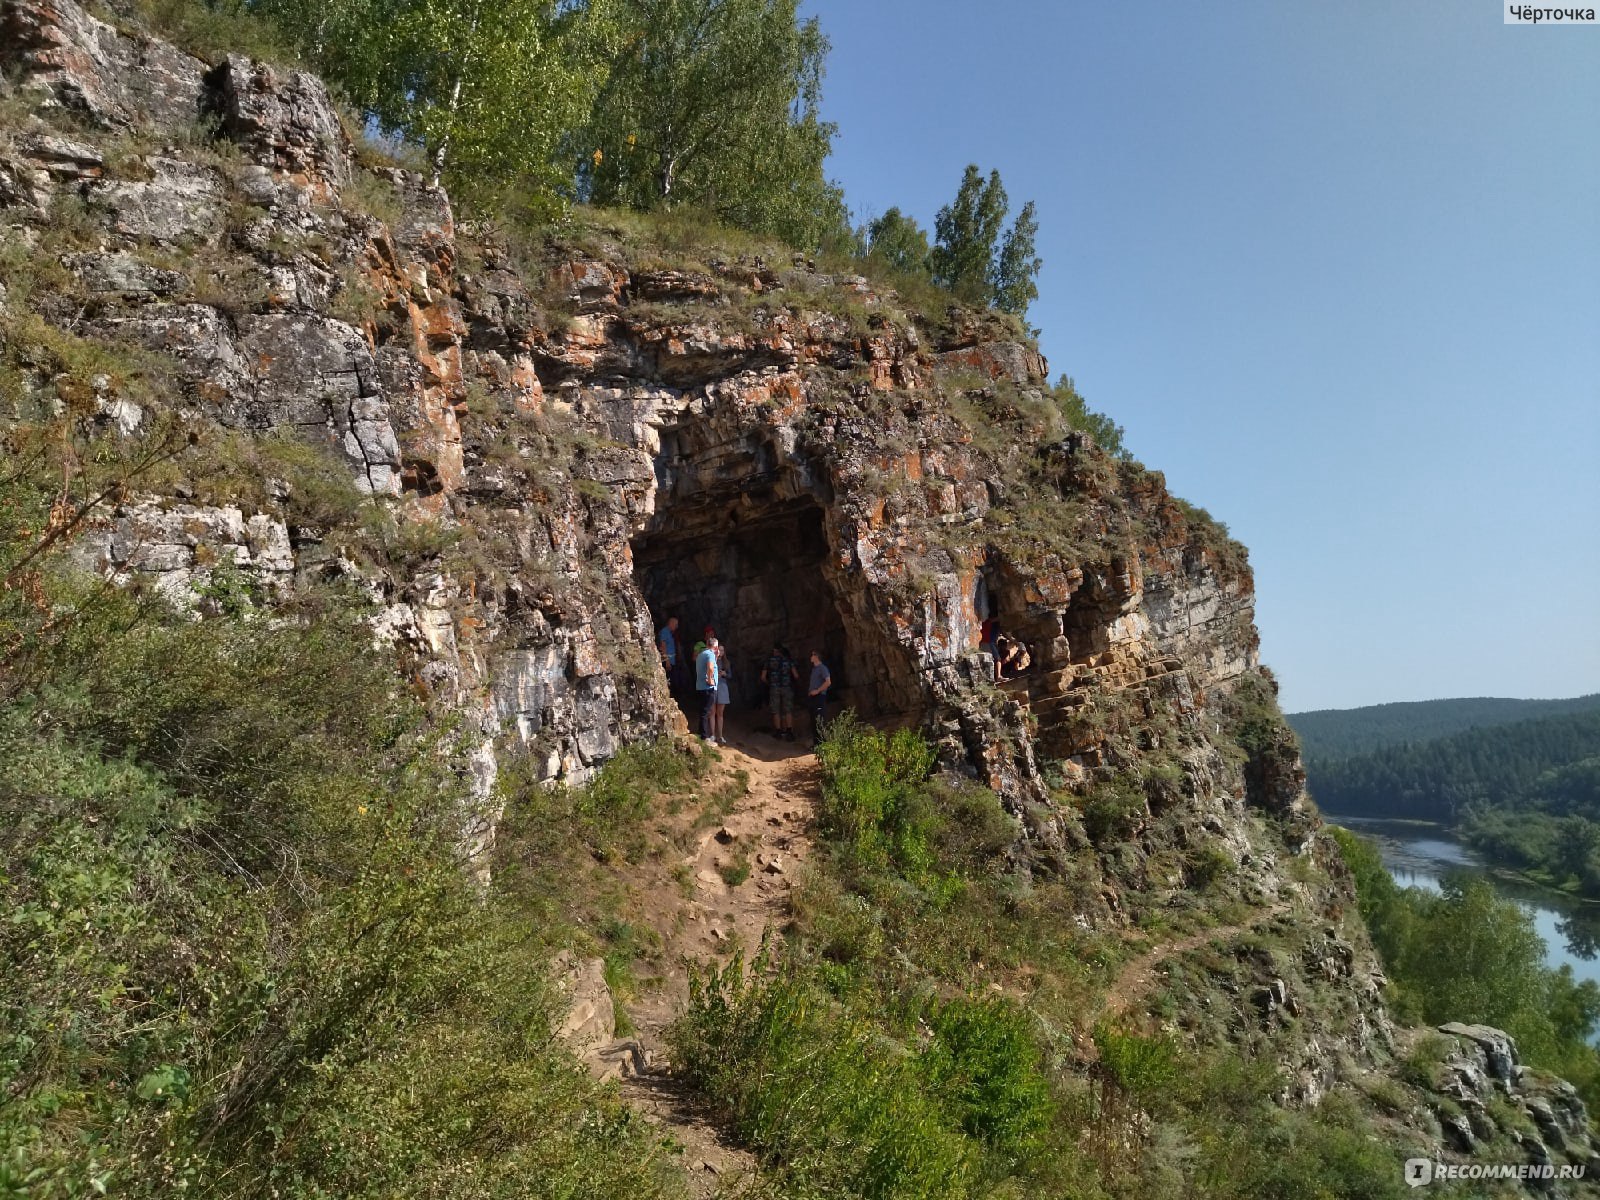 Пещера Салавата Юлаева, Идрисовская. Июль 2022